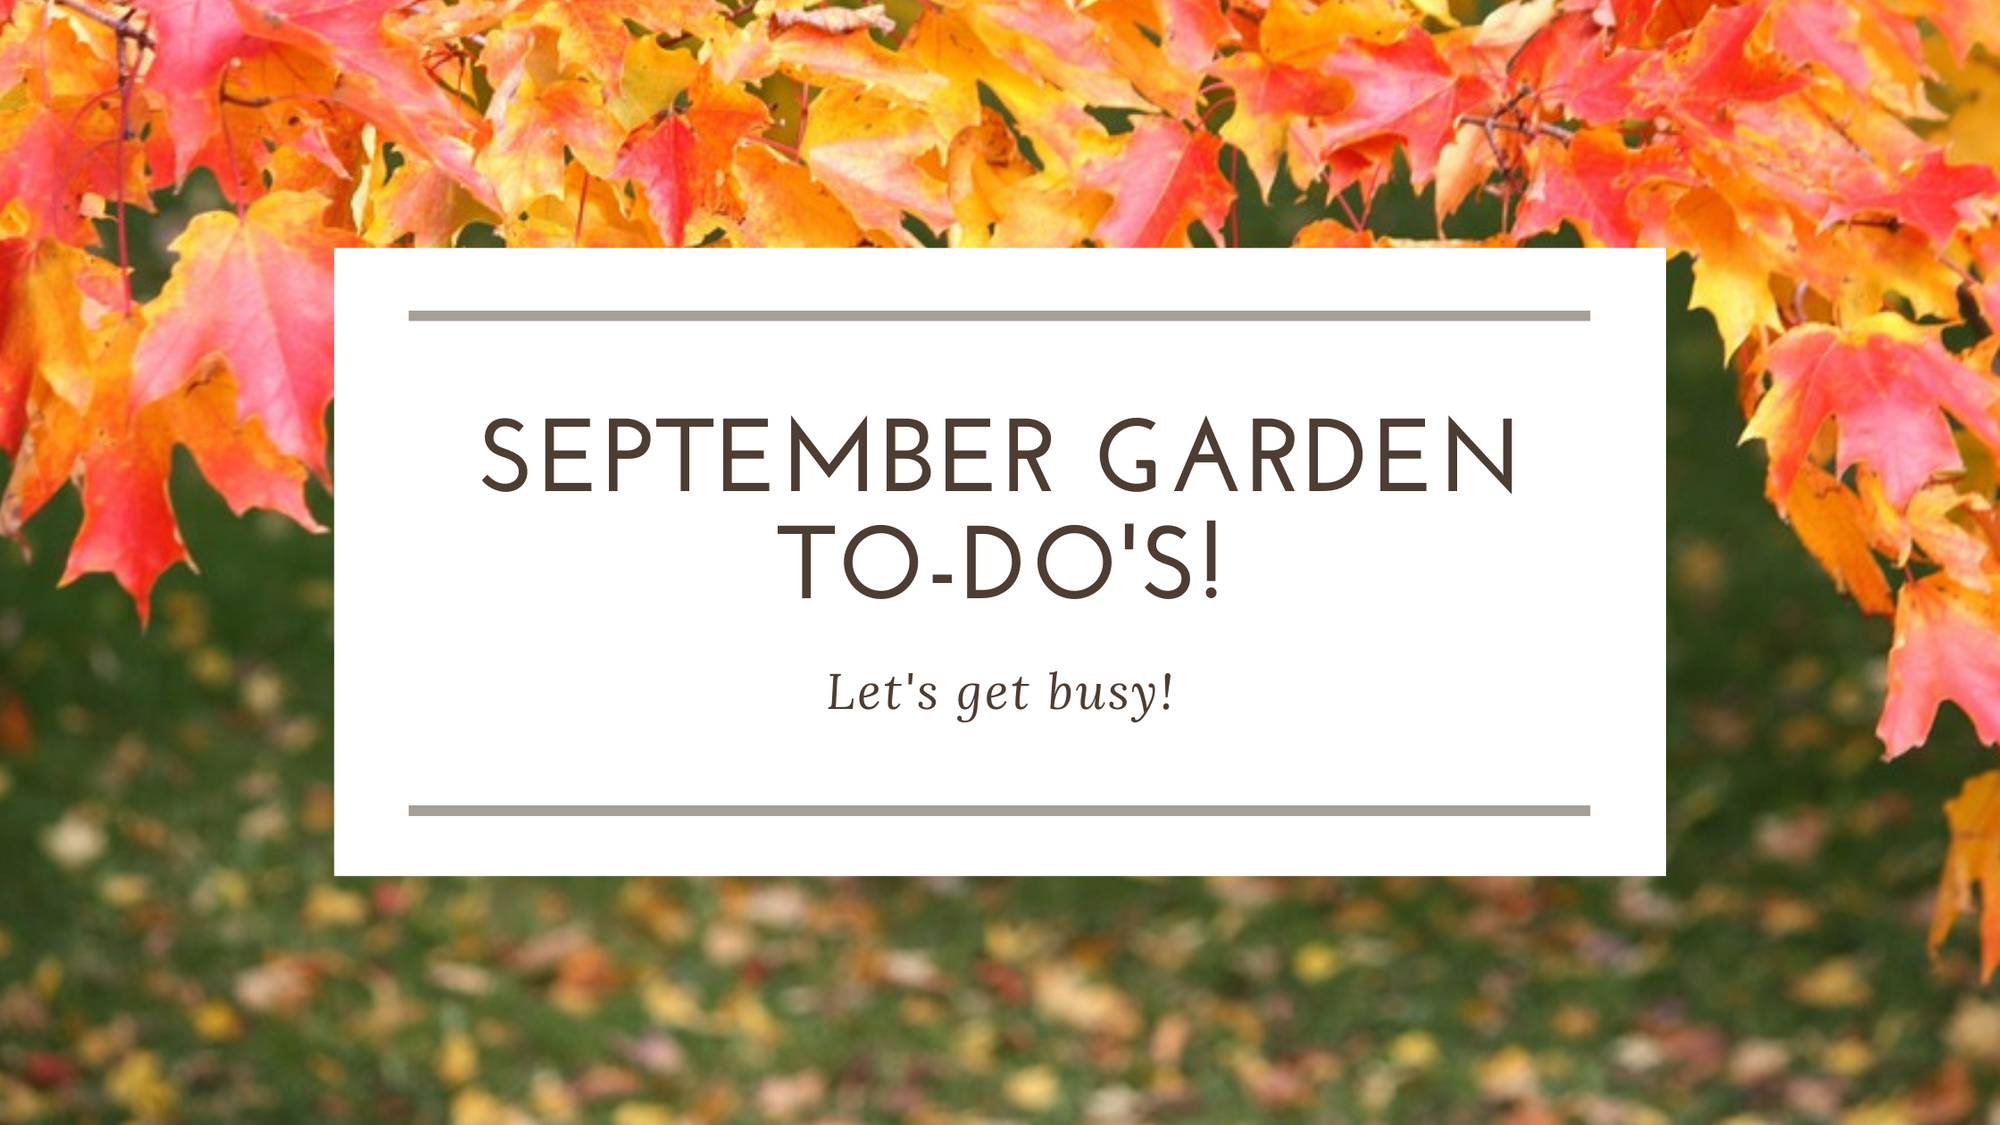 Summerland's September Garden To-Do's!